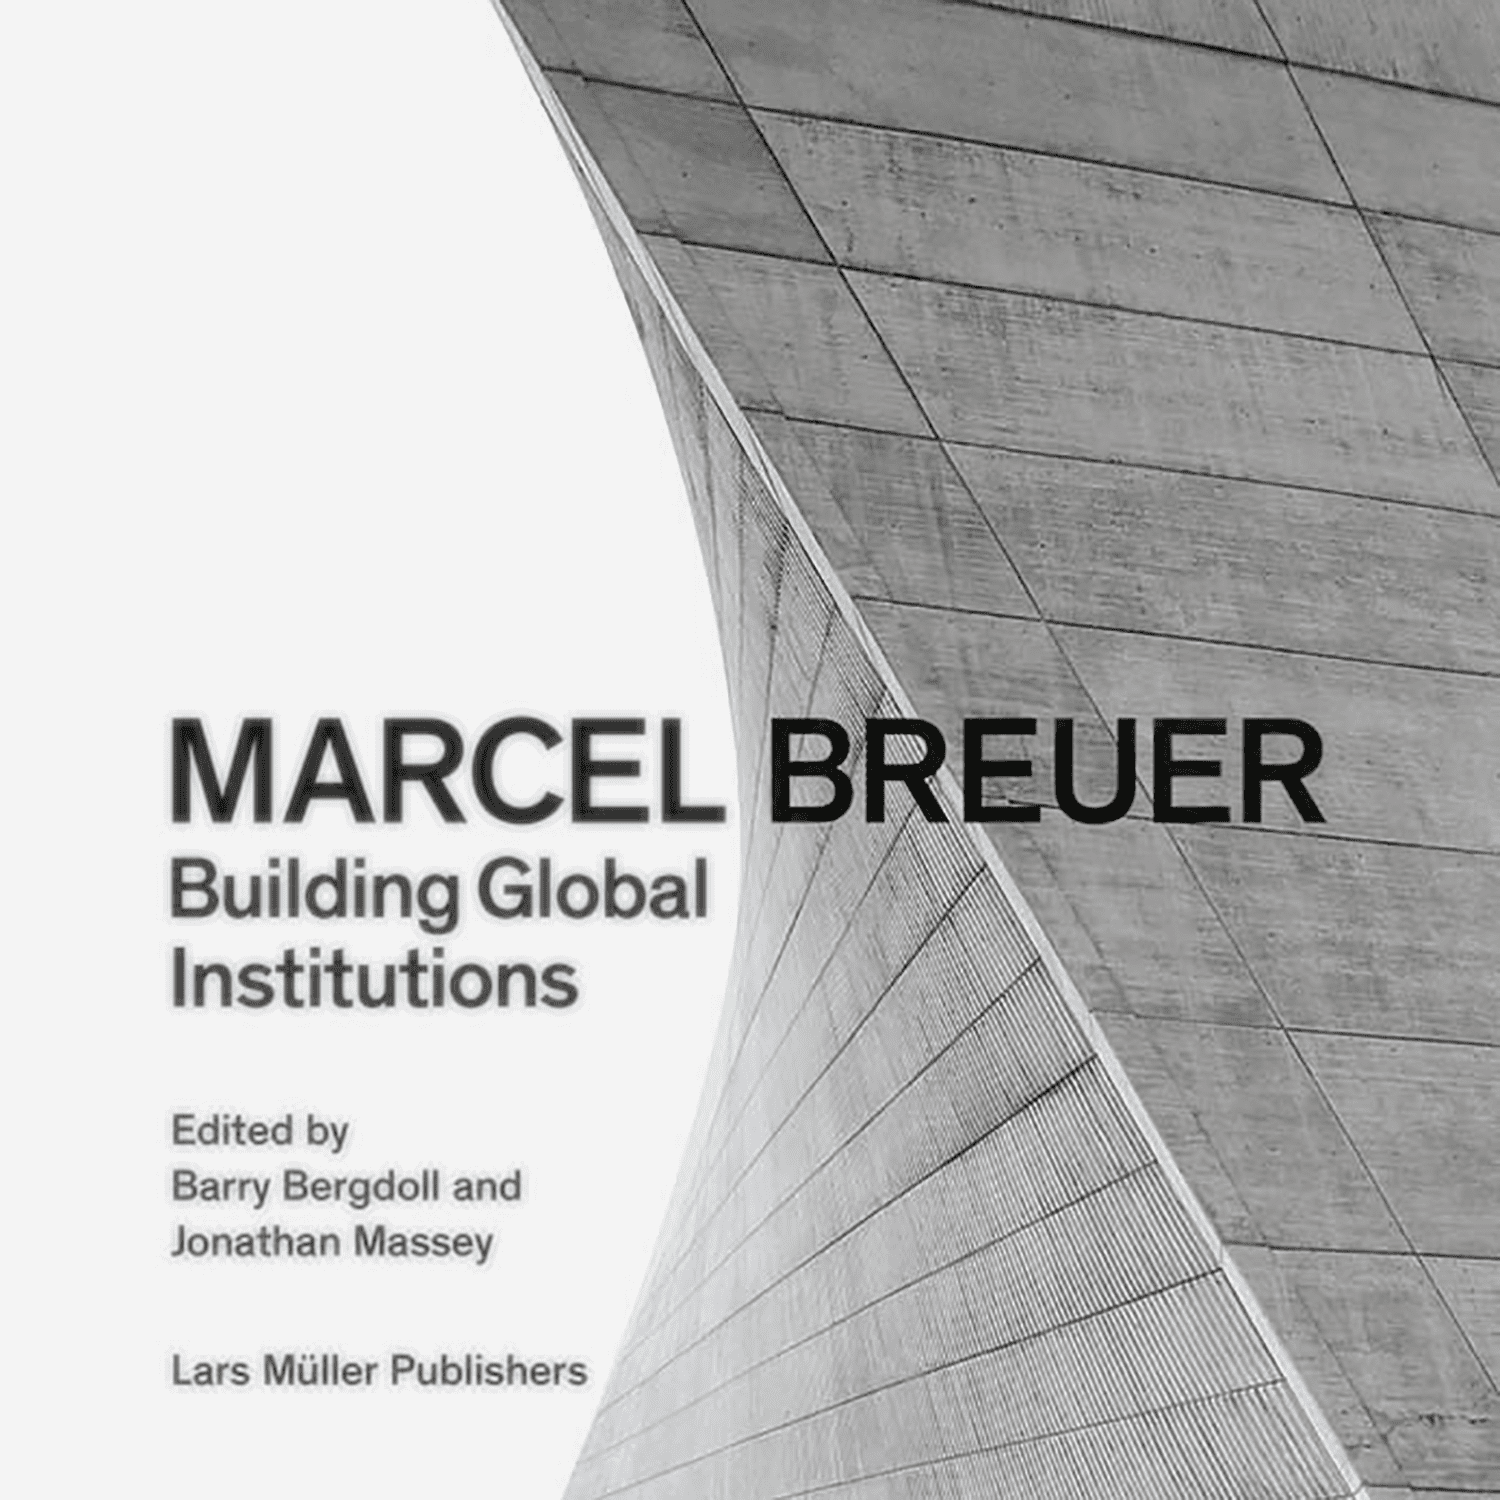 εικόνα του Marcel Breuer - Χτίζοντας παγκόσμιους θεσμούς